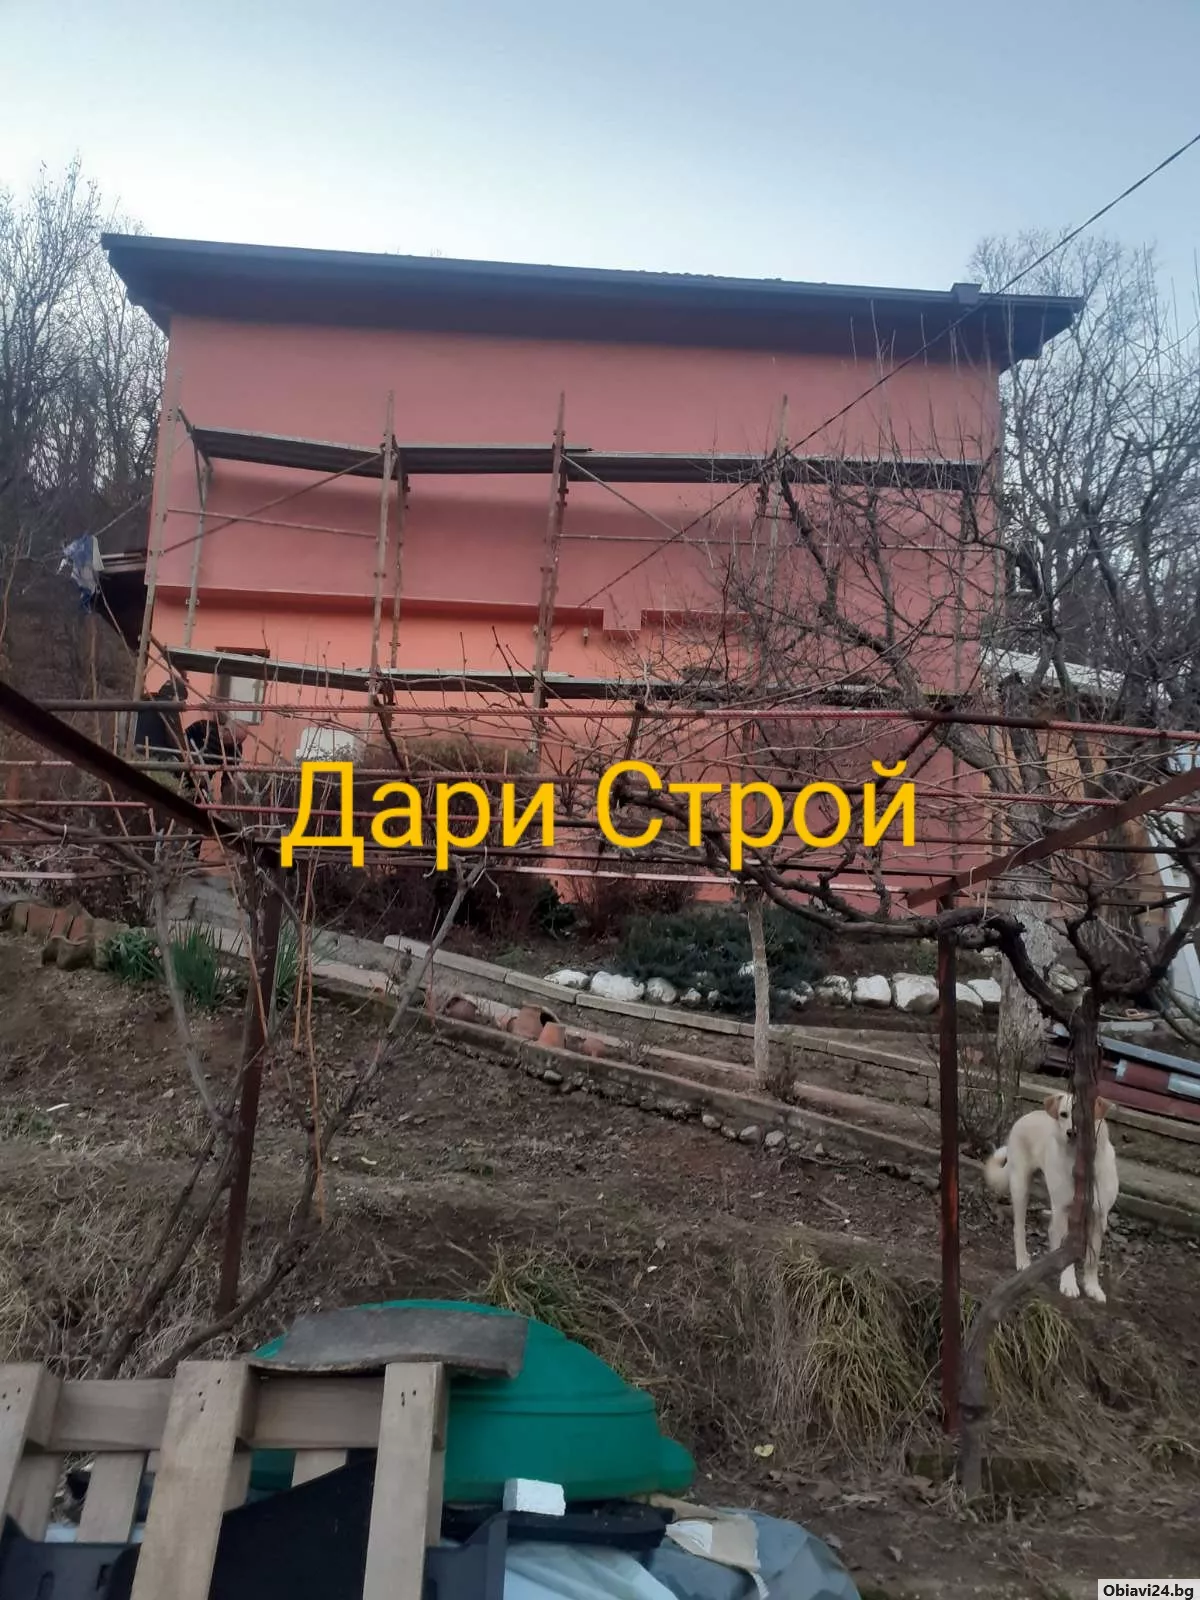 Всички вътрешни ремонти и топлоизолация от Дари Строй - obiavi24.bg